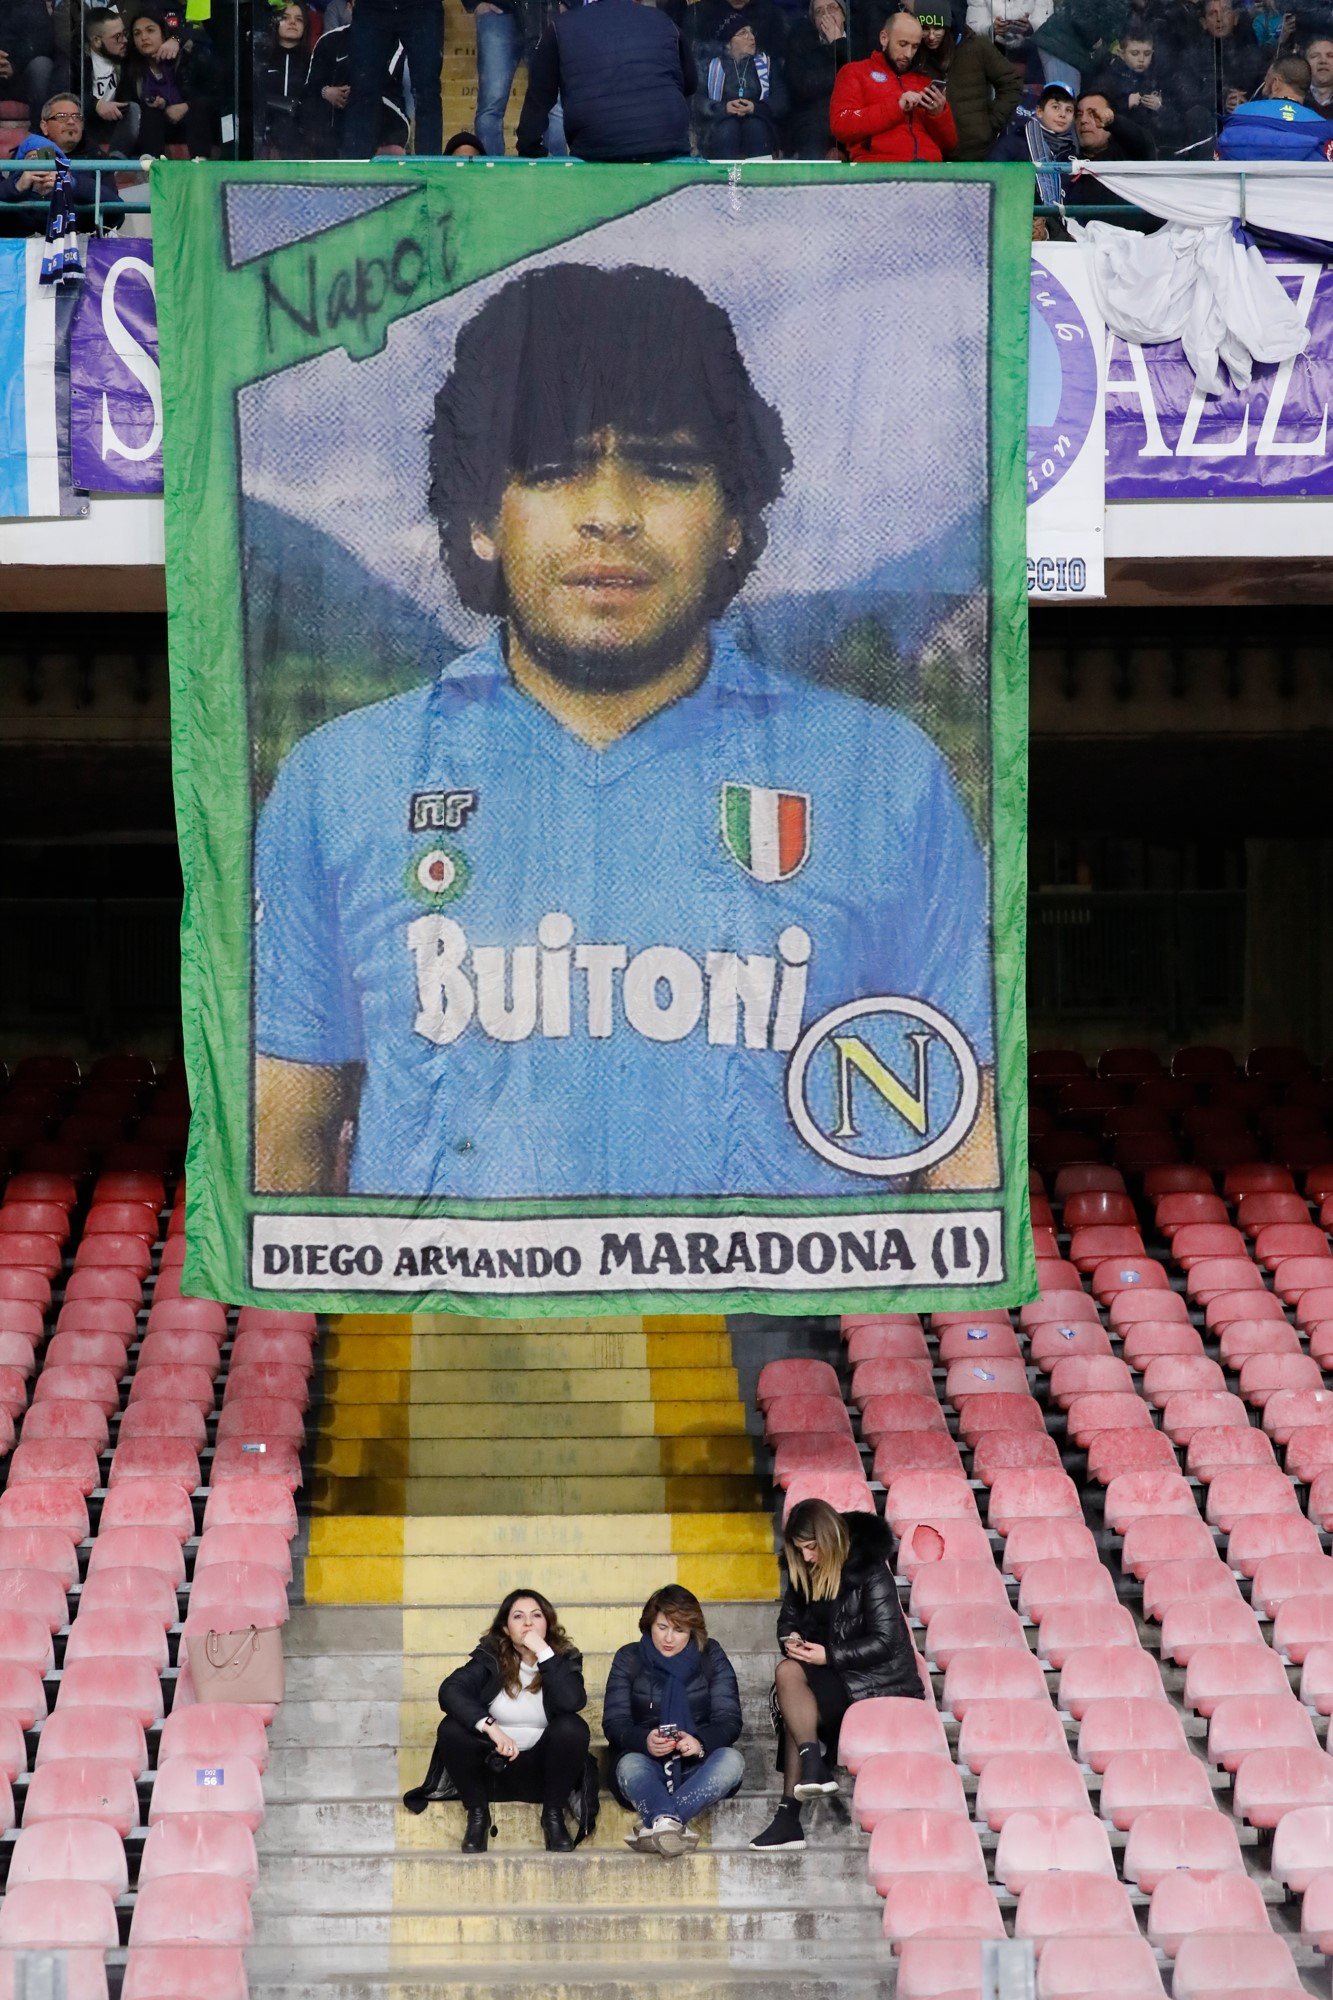 L'estadi del Nàpols canvia de nom i es dirà Diego Armando Maradona